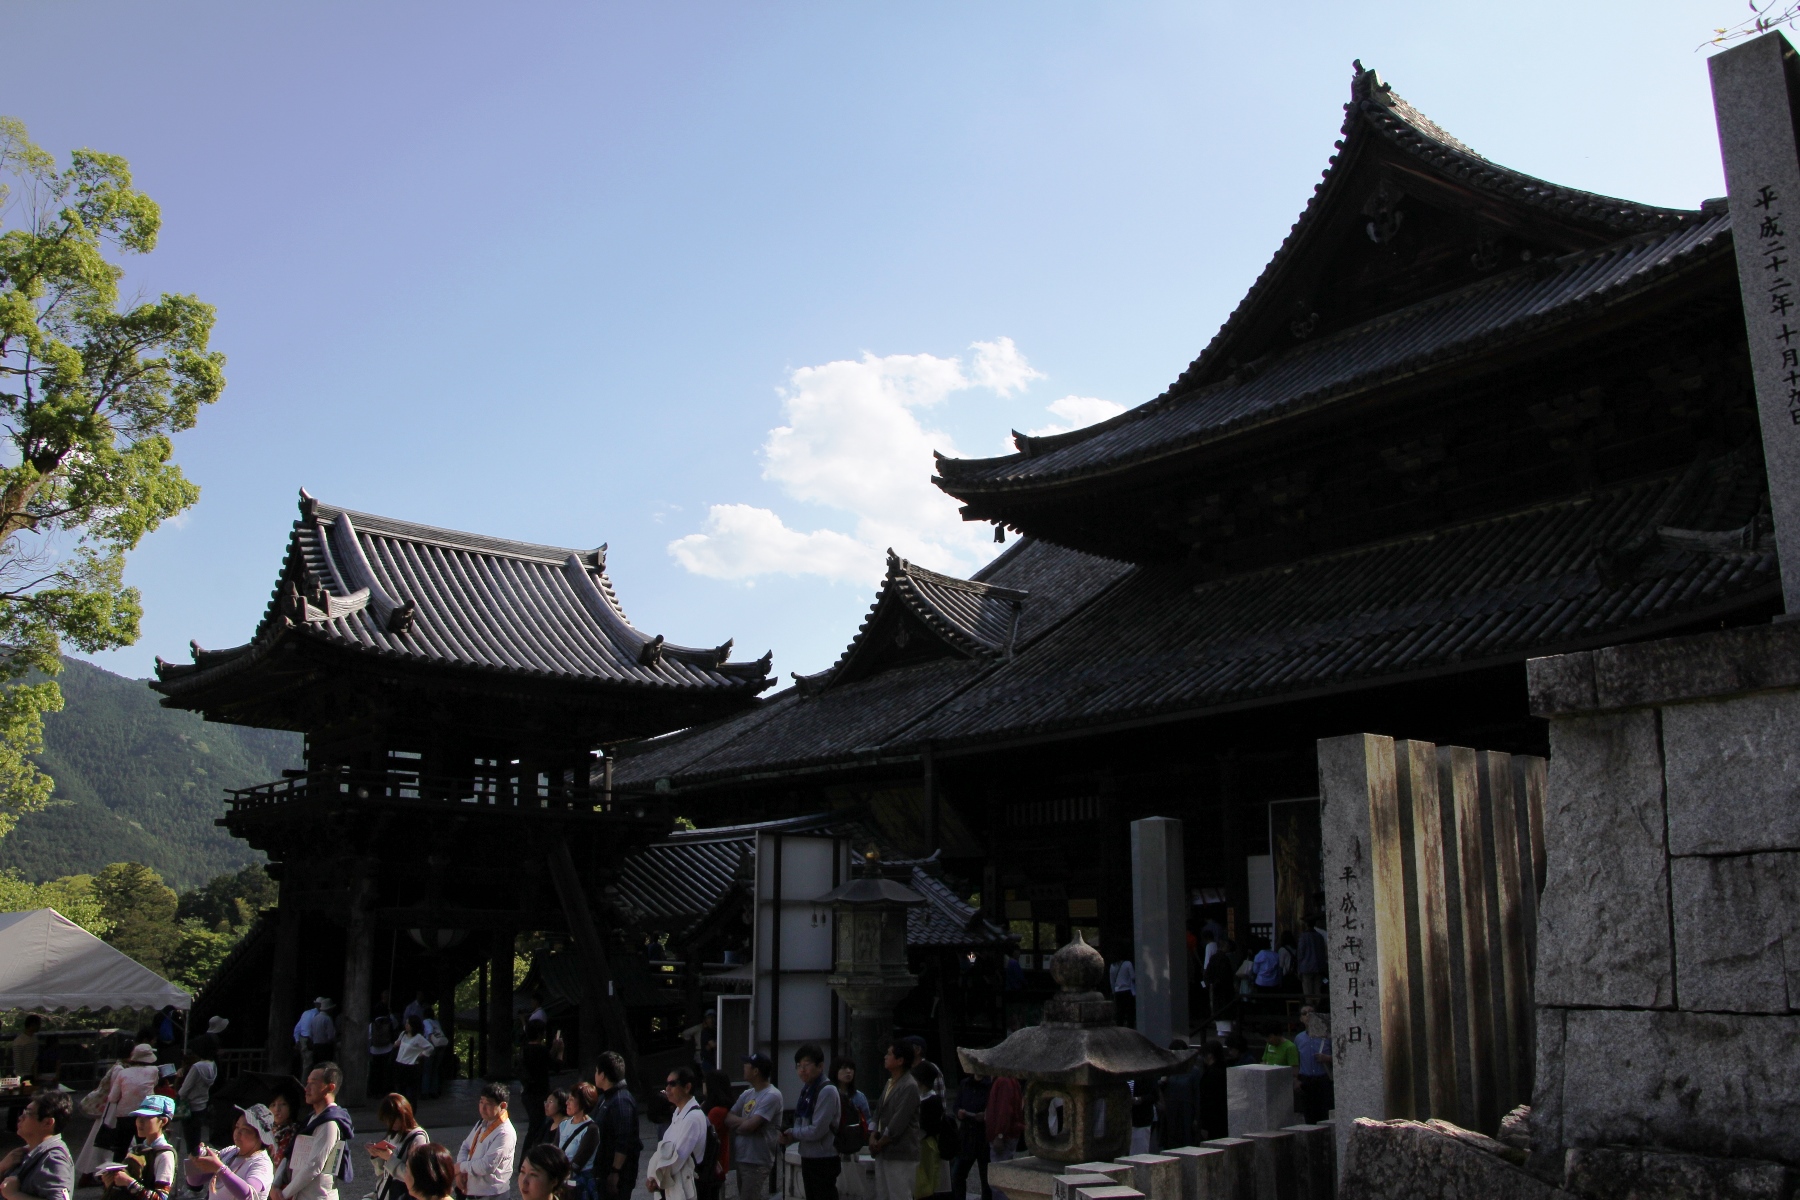 0276.奈良「長谷寺」訪問記3 - 観音様のお御足に触れる : 地球の覗き方